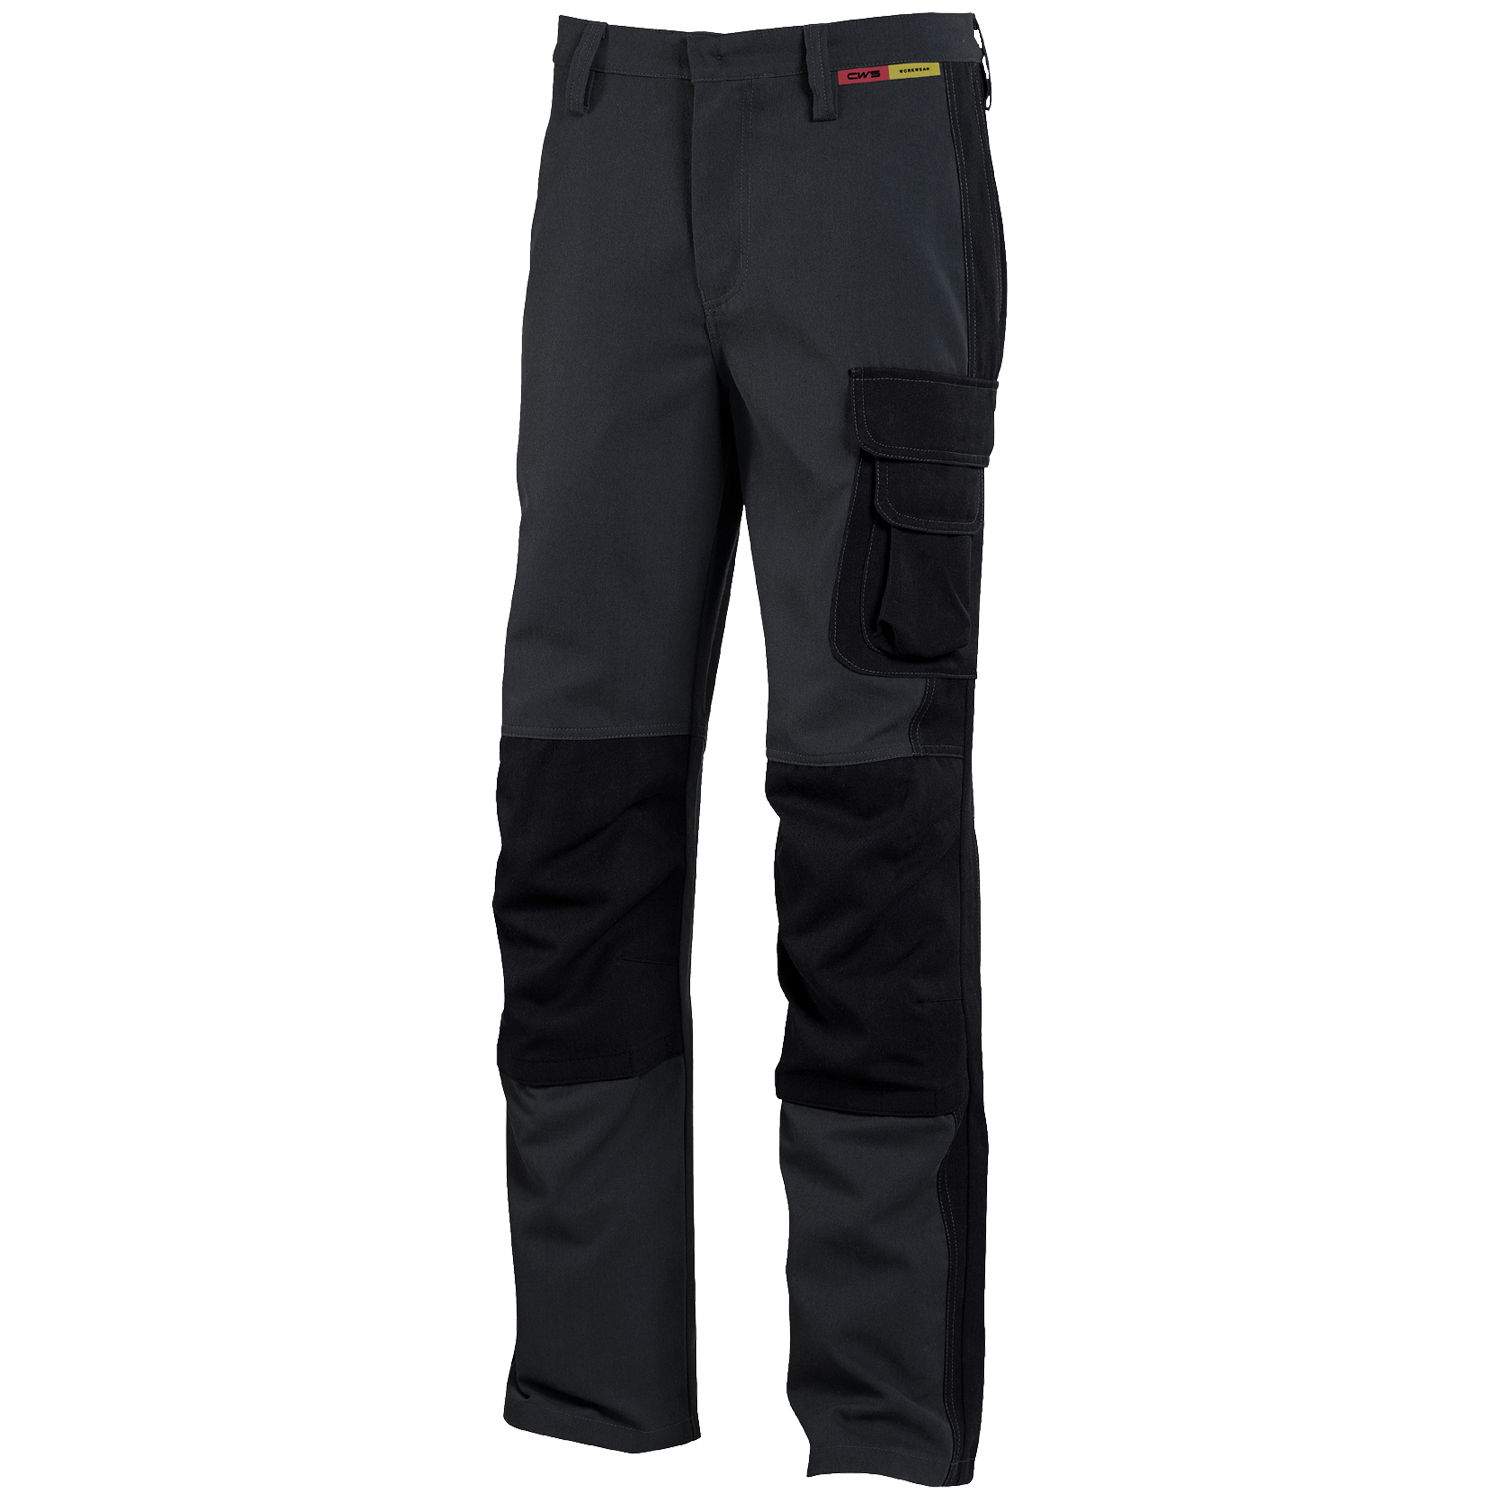 CWS Profi Line Protection Trousers Grey/DarkGrey w/ Kneepad Pockets